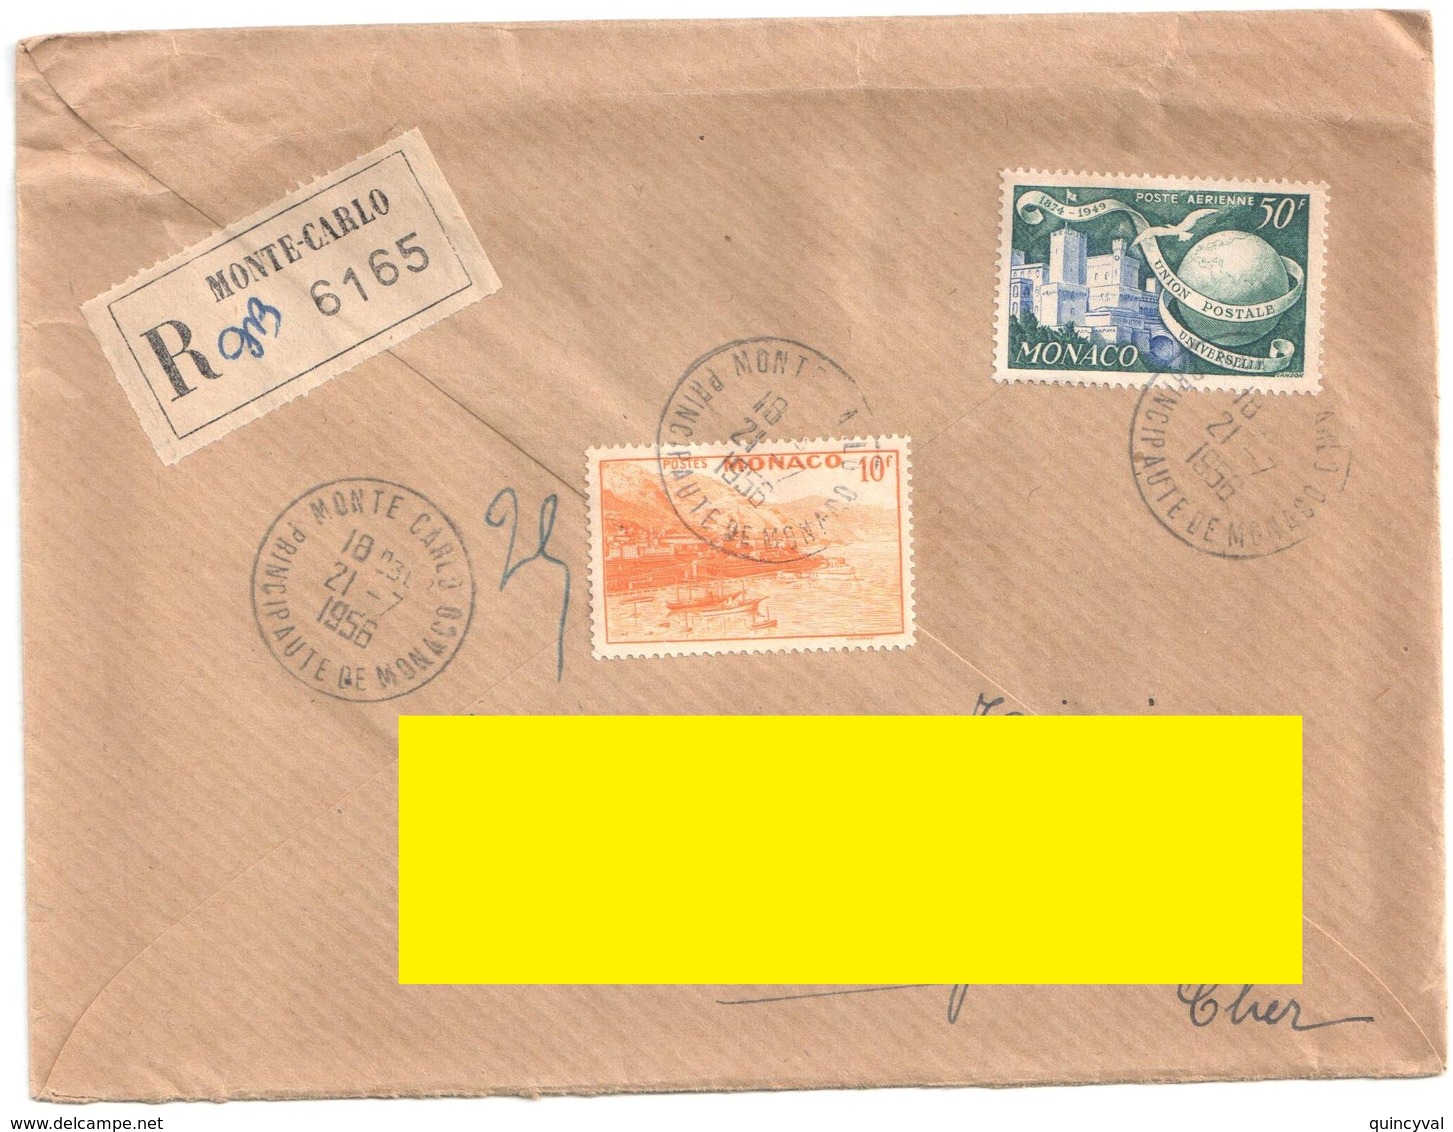 MONTE CARLO Lettre Recommandée Ob 21 7 1956 10 F Rade Jaune 50 FUPU Yv 311A PA47 - Cartas & Documentos